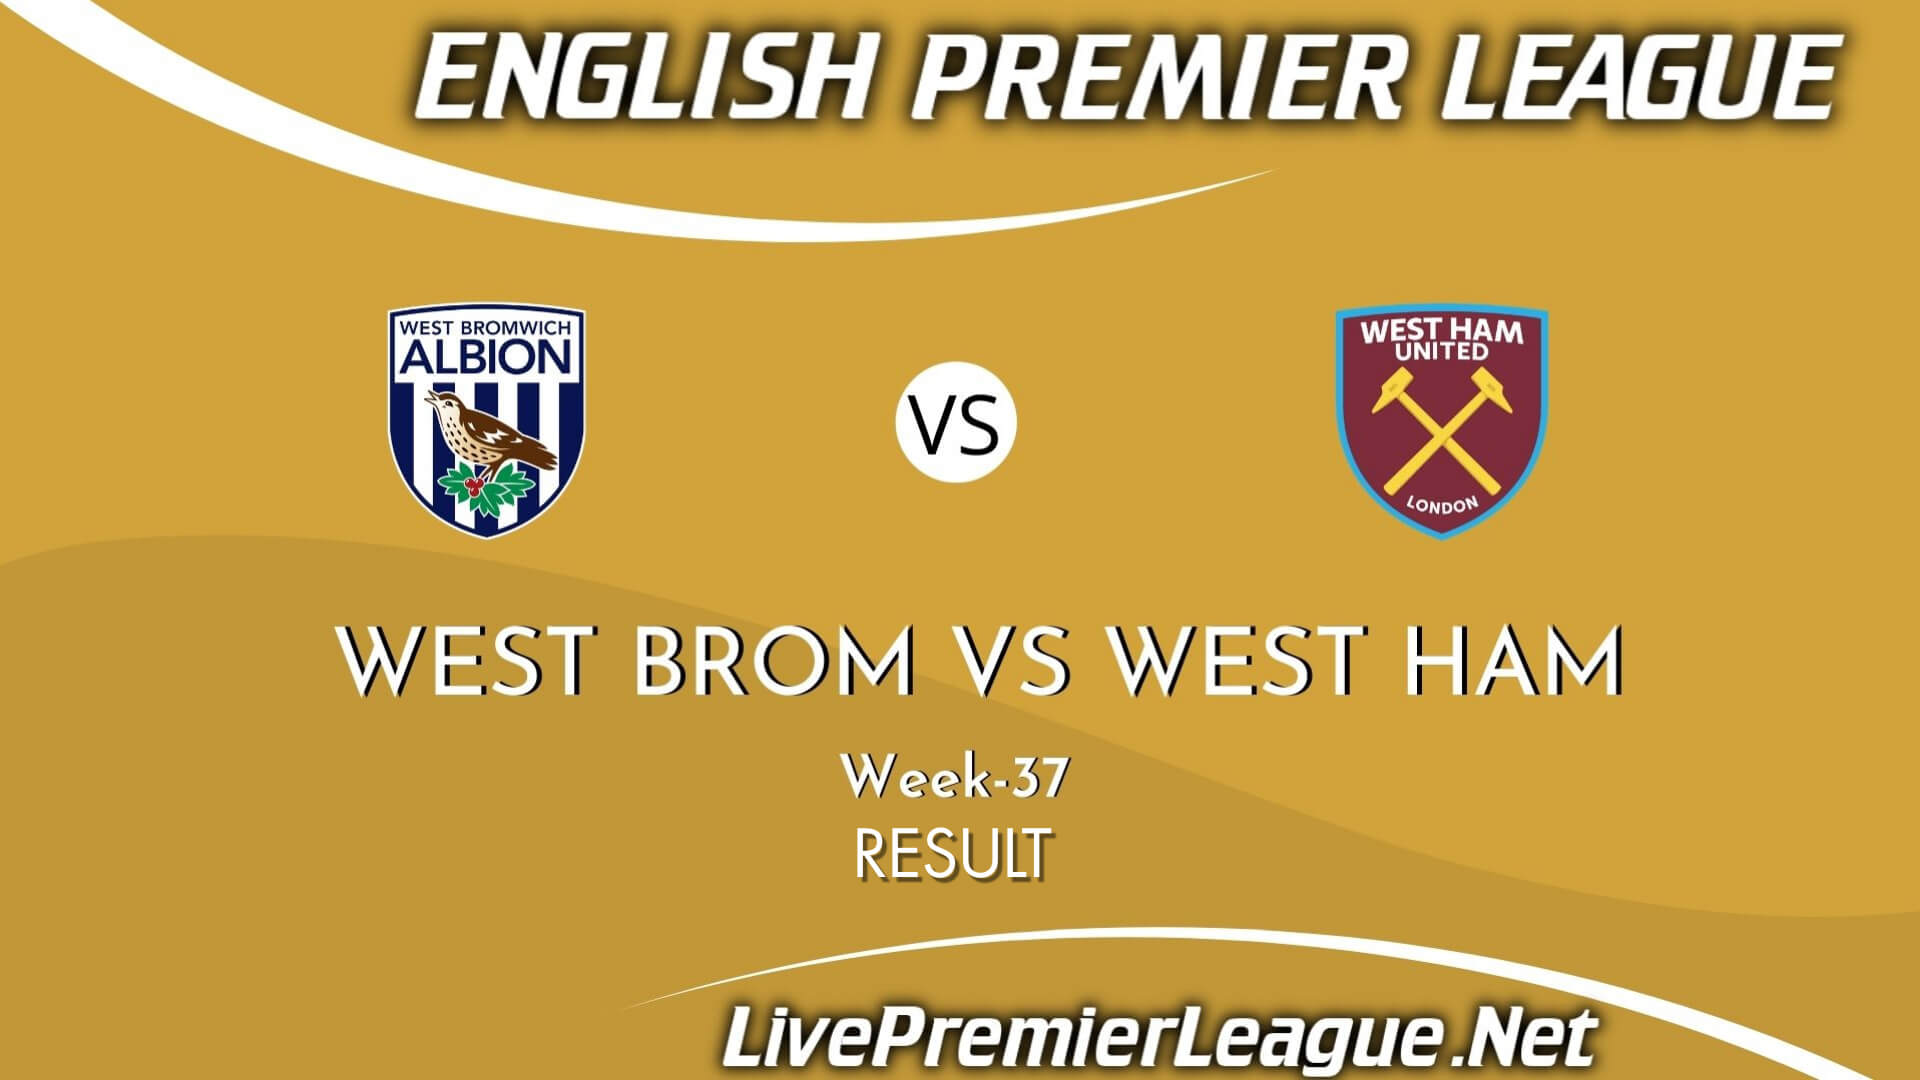 West Brom Vs West Ham Result 2021 | EPL Week 37